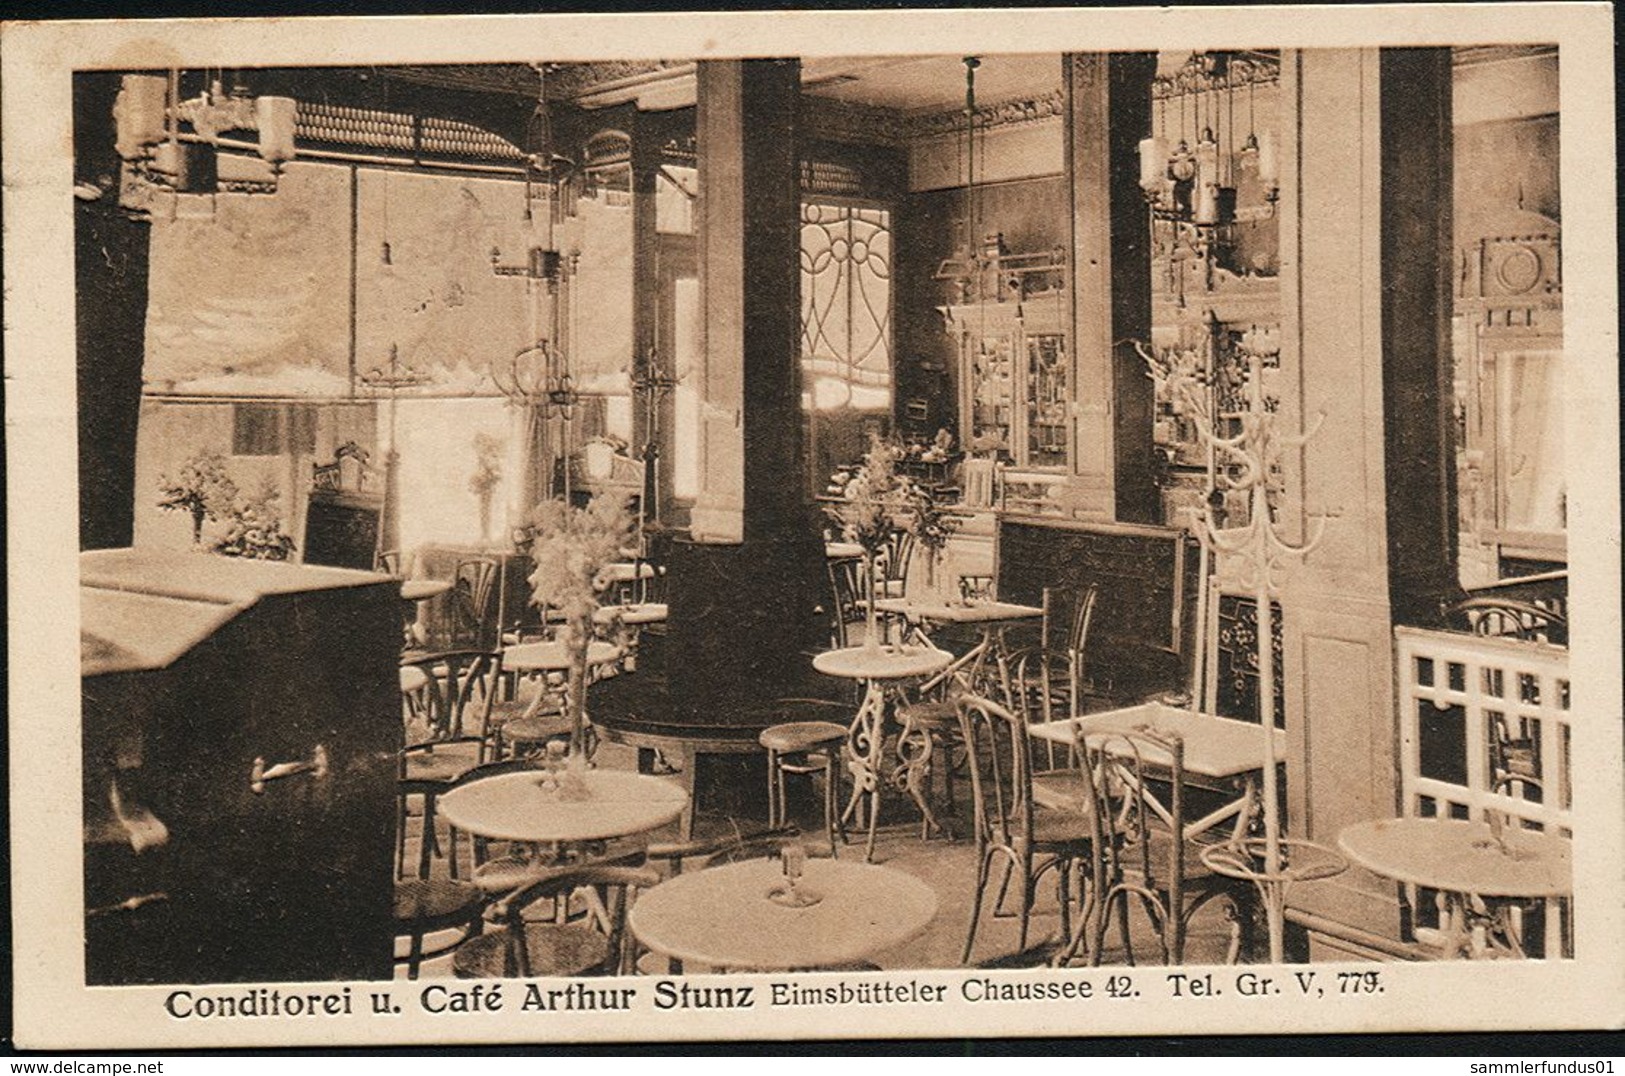 AK/CP Hamburg Eimsbüttel   Conditorei Und Cafe Stunz  Gastraum      Gel./circ. 1916    Erh./Cond. 2   Nr. 01125 - Eimsbüttel